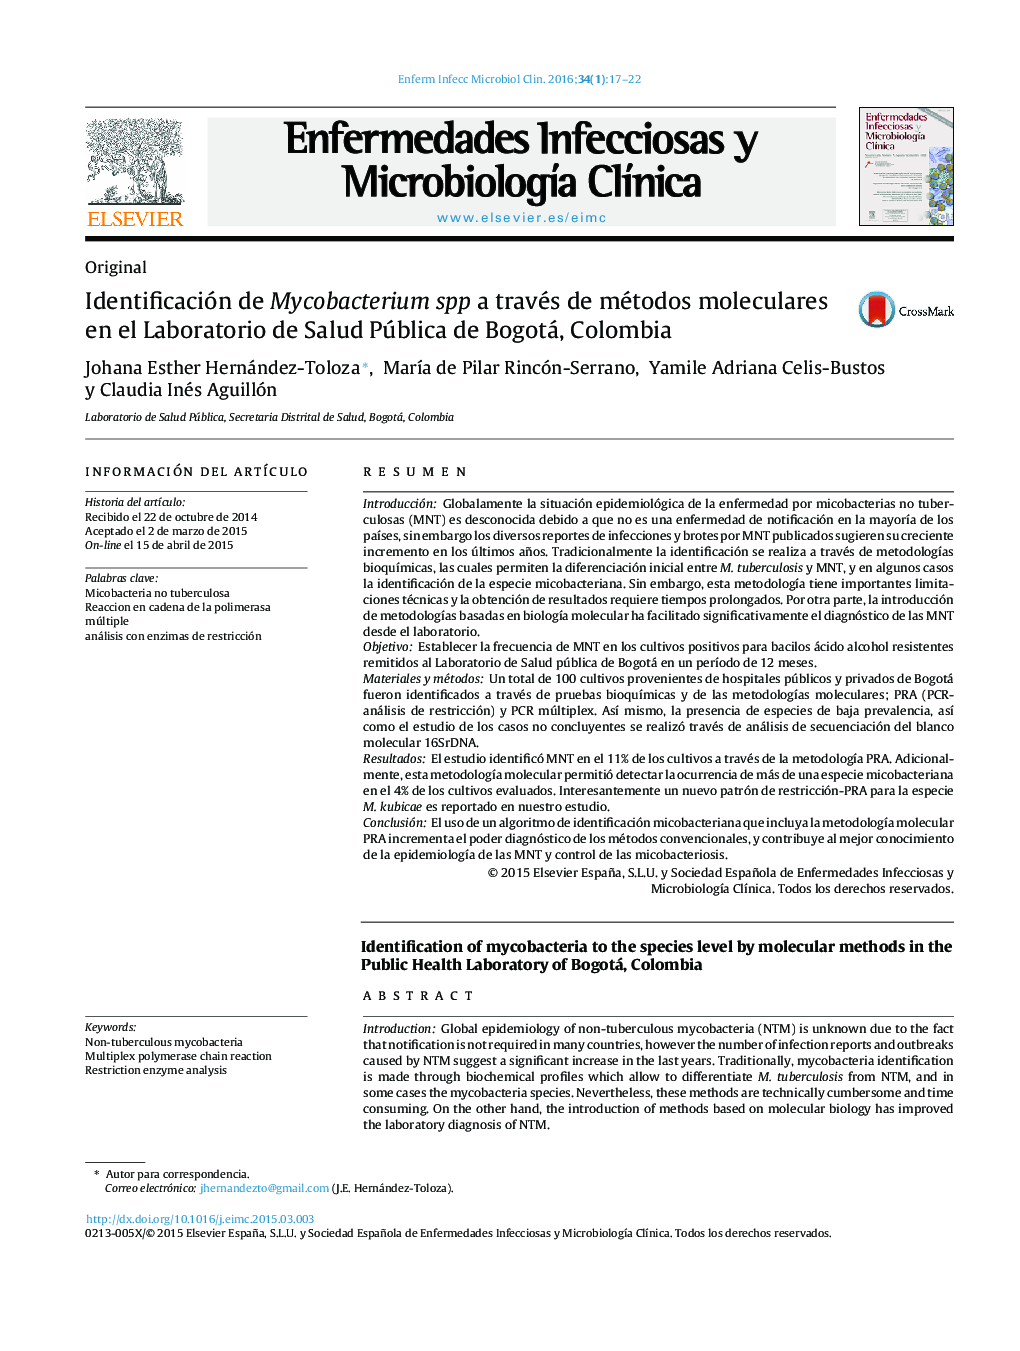 Identificación de Mycobacterium spp a través de métodos moleculares en el Laboratorio de Salud Pública de Bogotá, Colombia